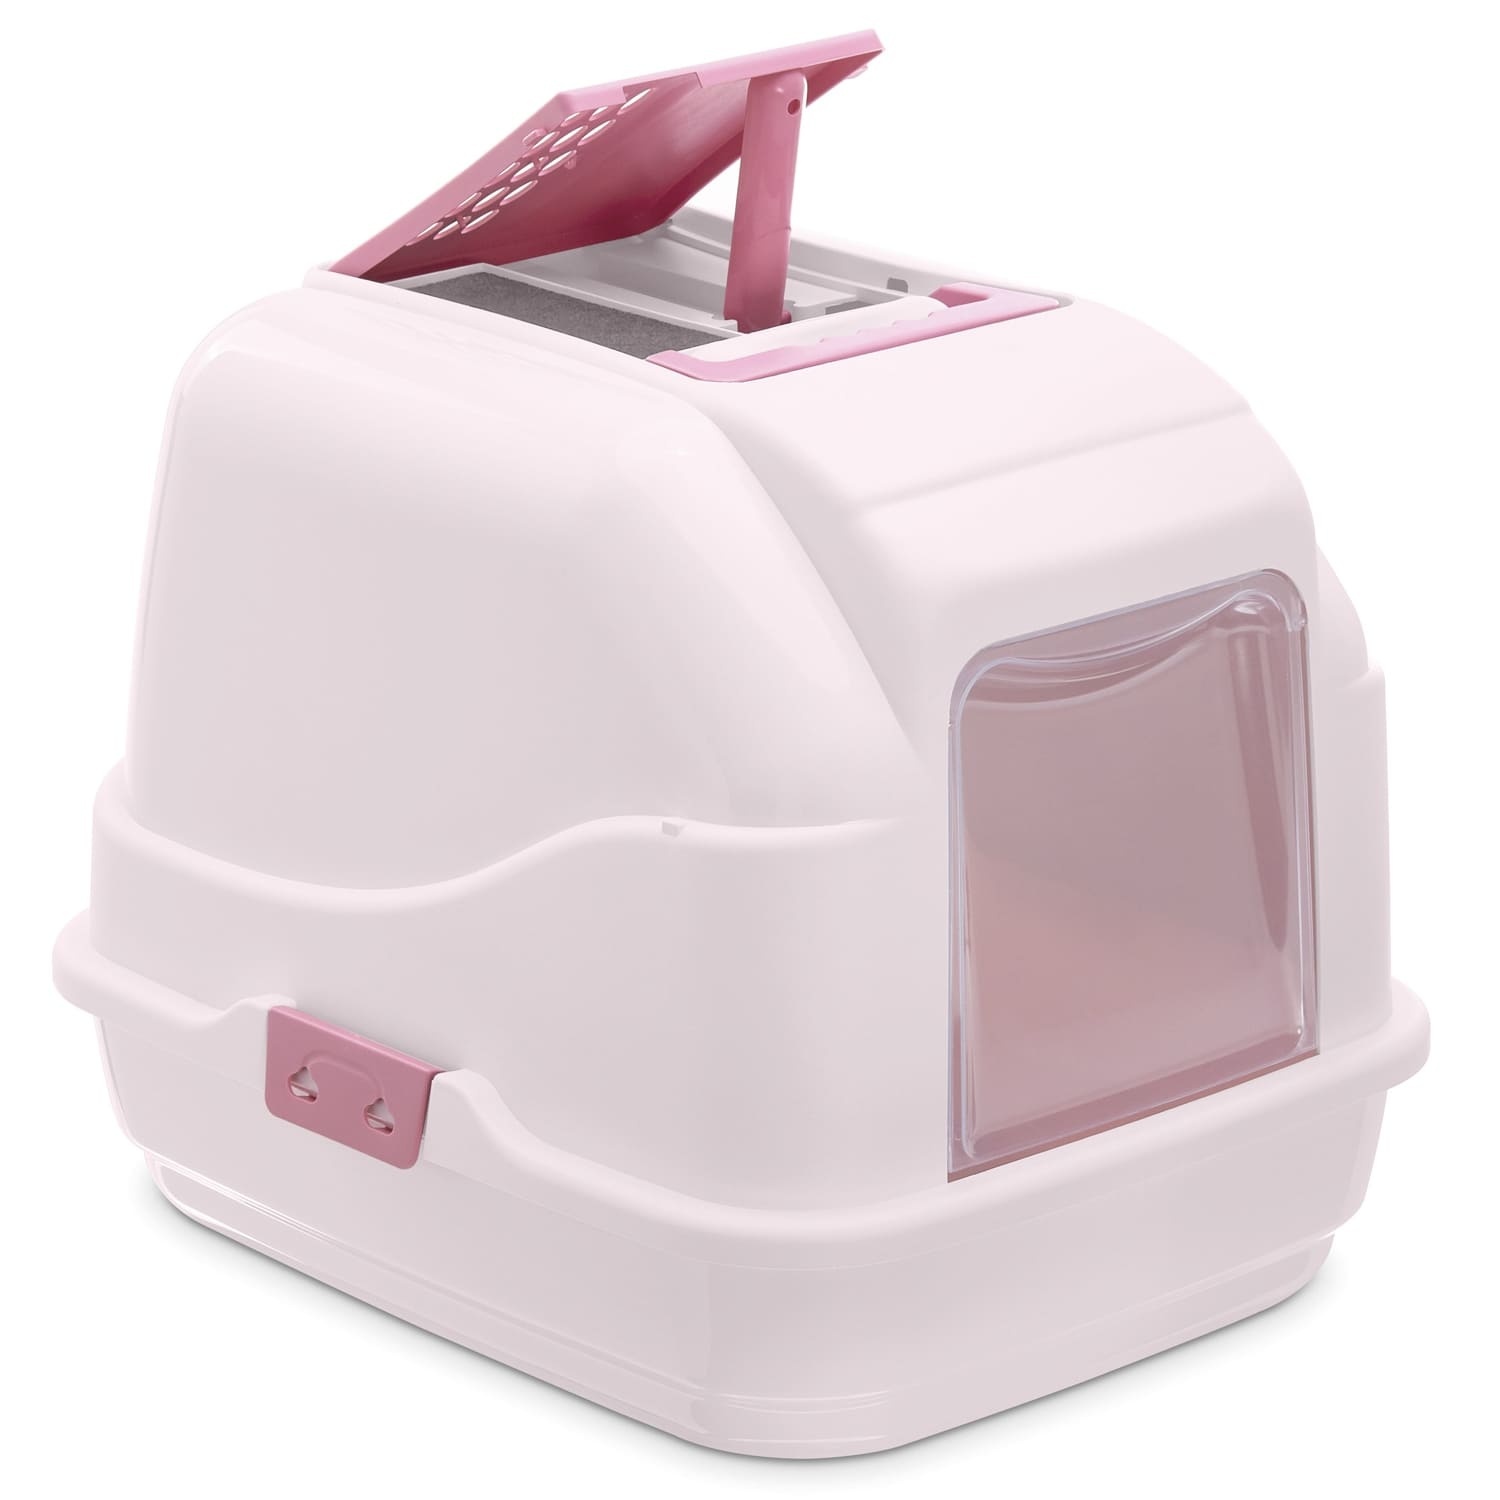 IMAC IMAC био-туалет для кошек, нежно-розовый (1,7 кг) био туалет